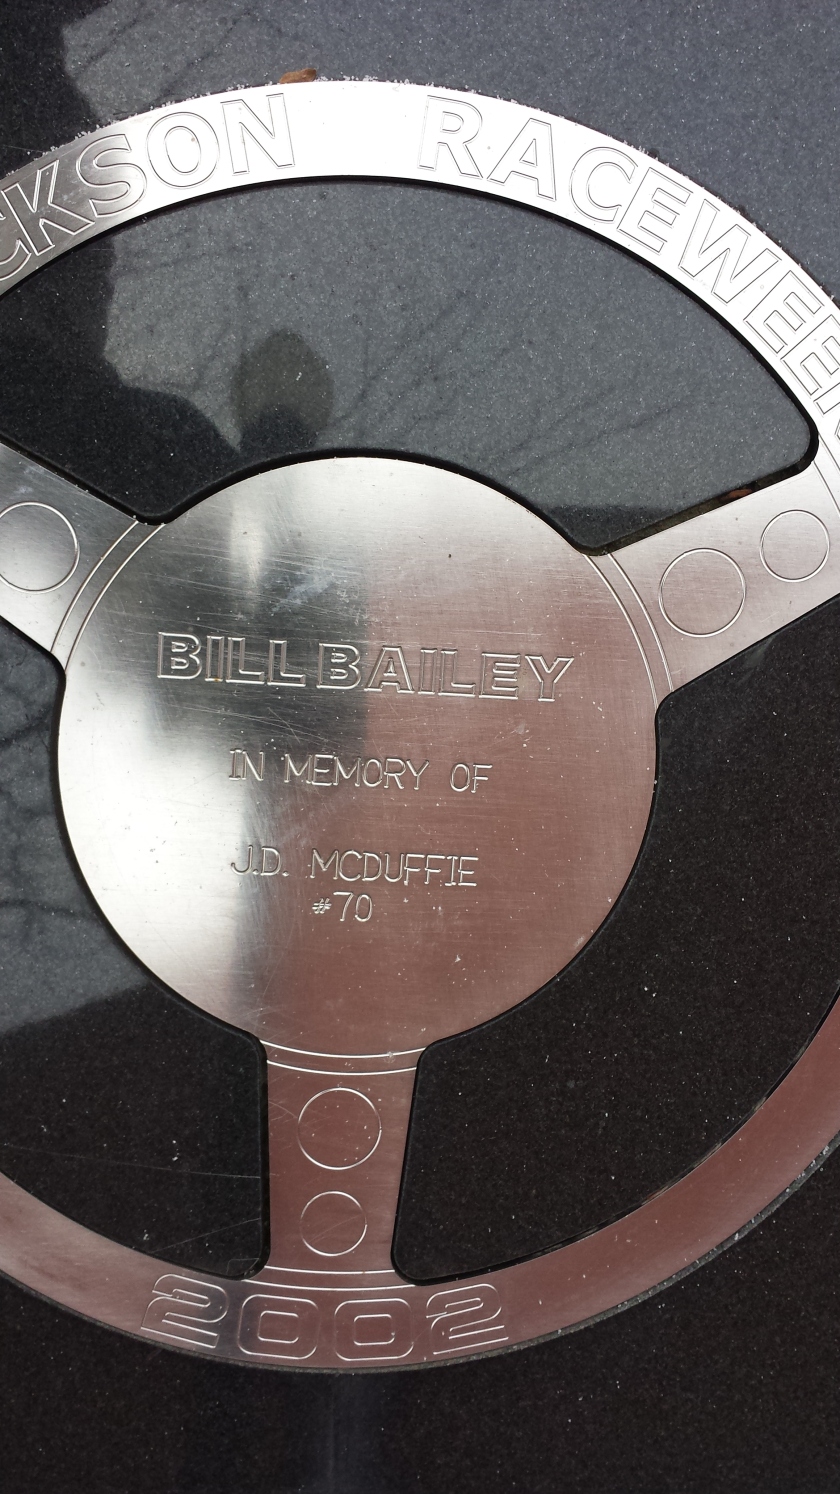 Bill Bailey - J.D. McDuffie #70 tribute wheel in Victory Lane